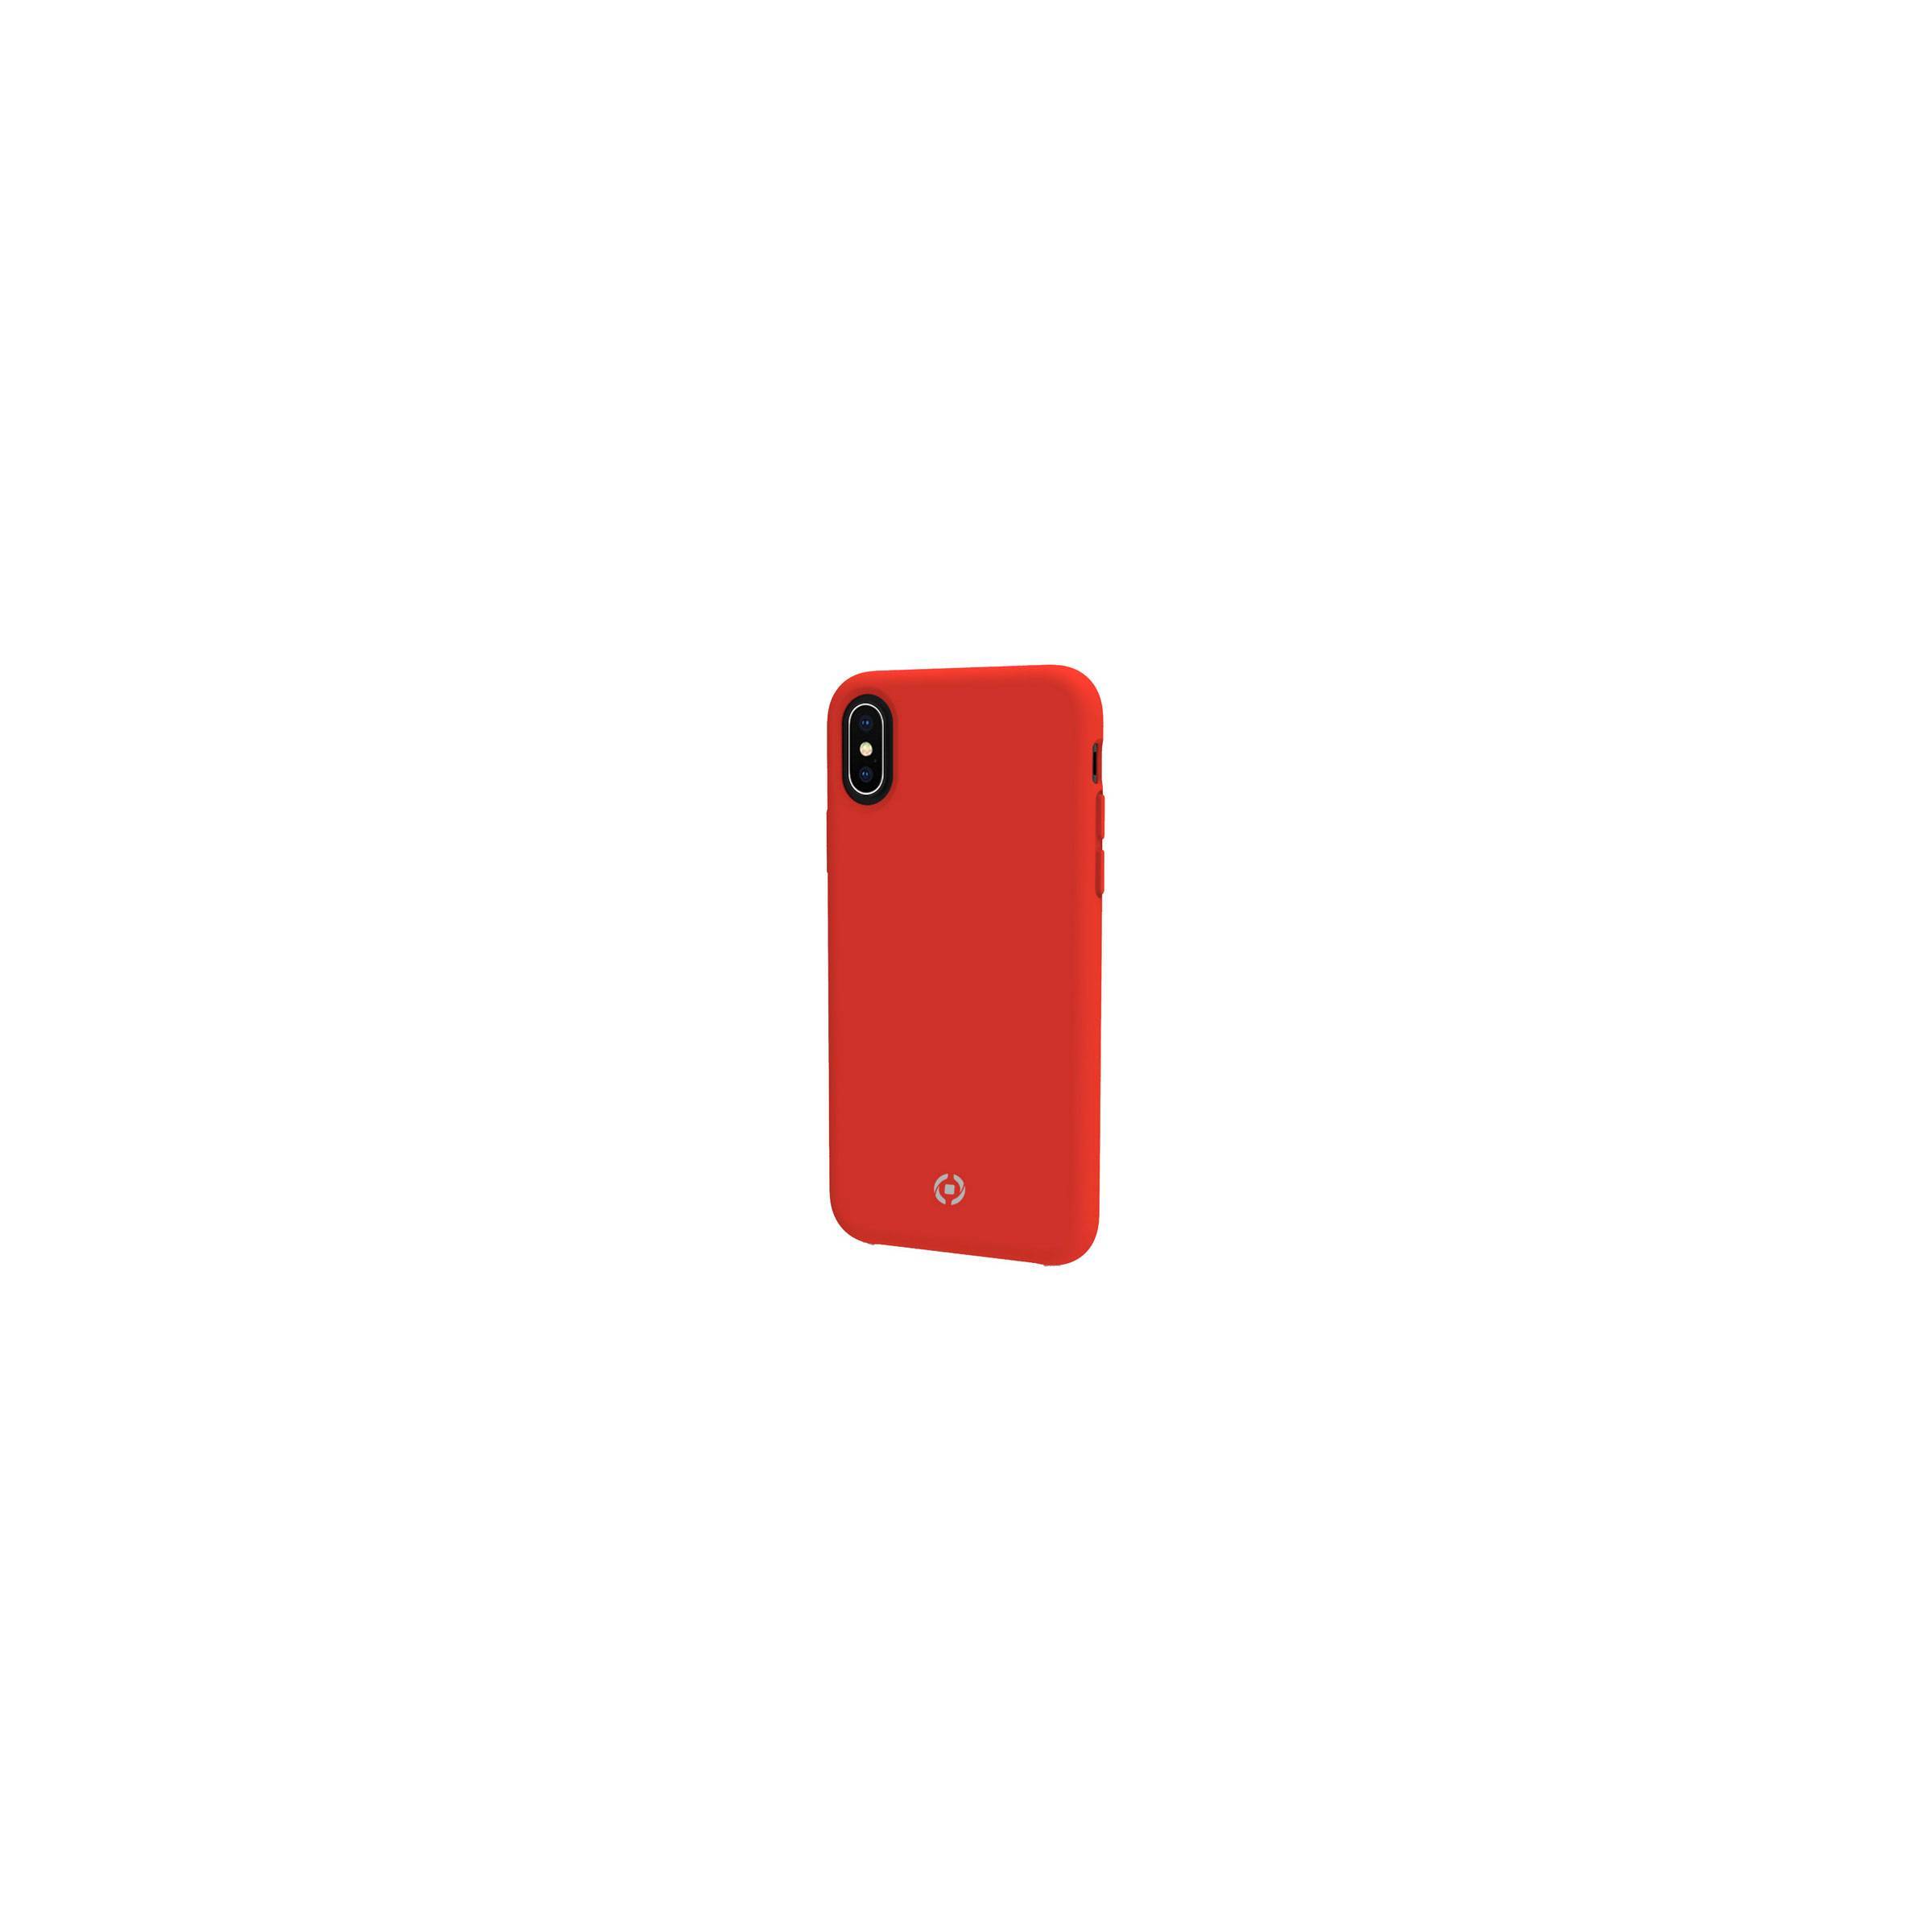 Bilde av Celly Feeling Iphone X/xs Silikone Cover, Rød